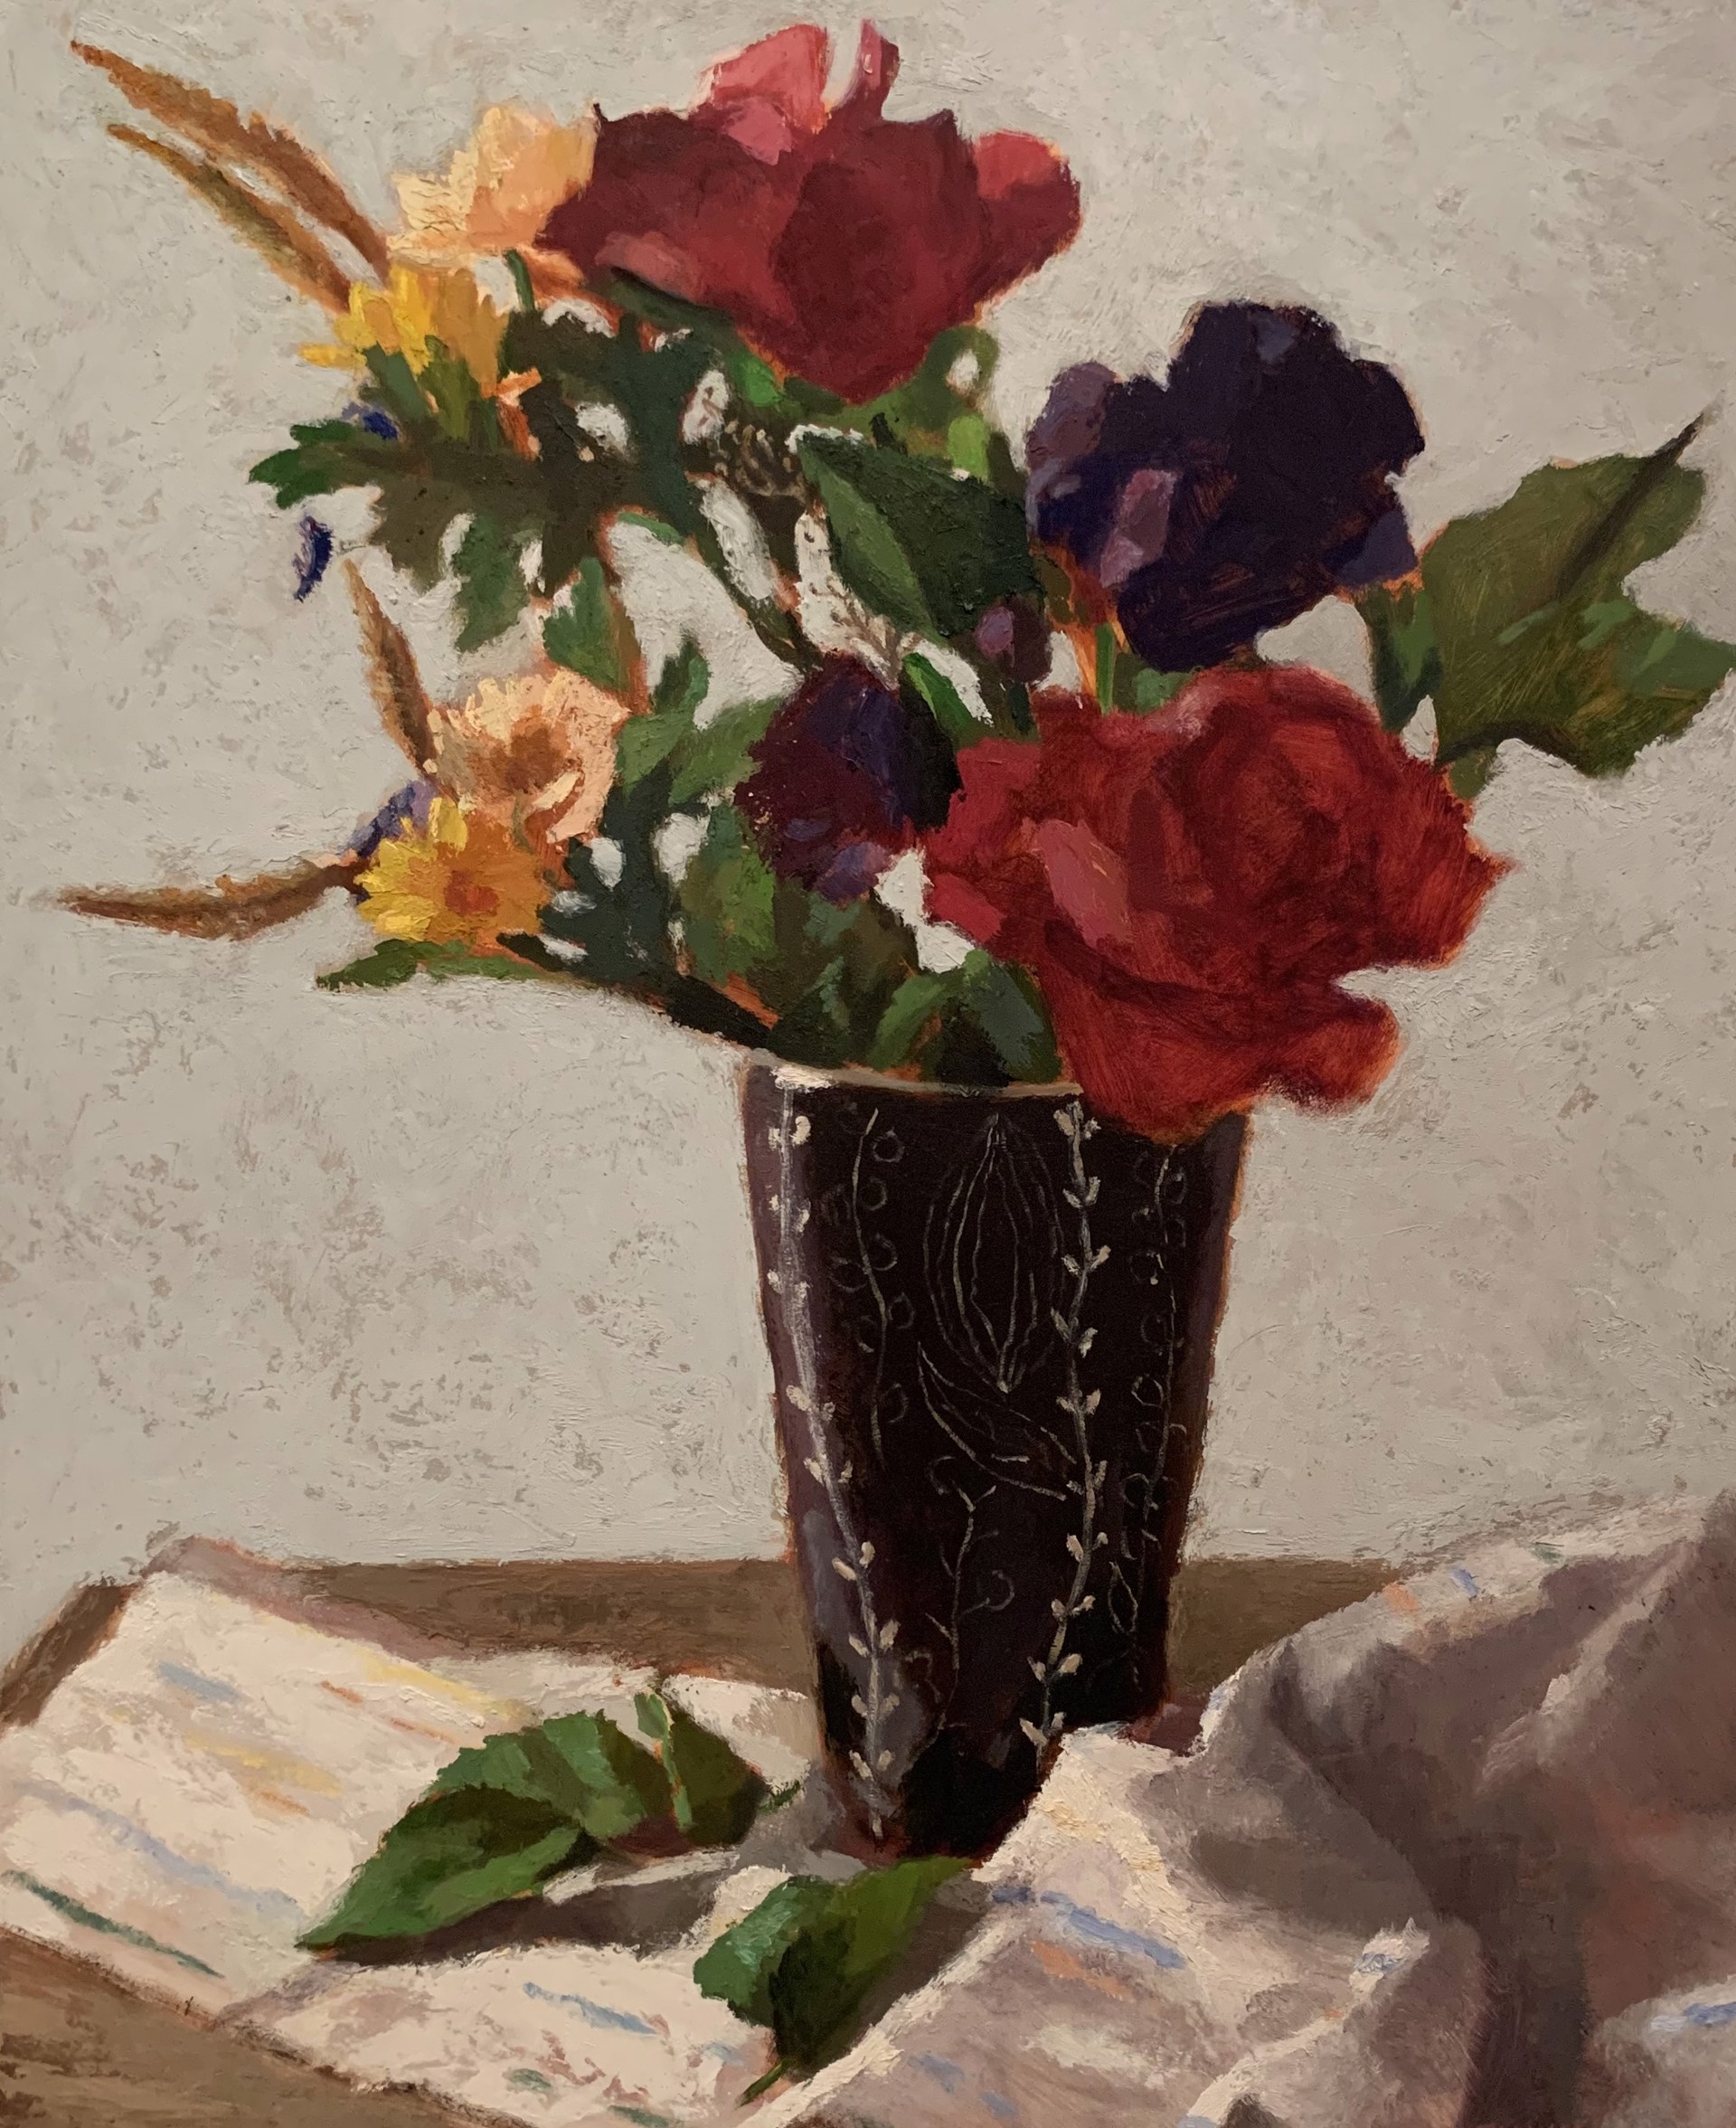 Flowers in Modern Vase by John Flavin